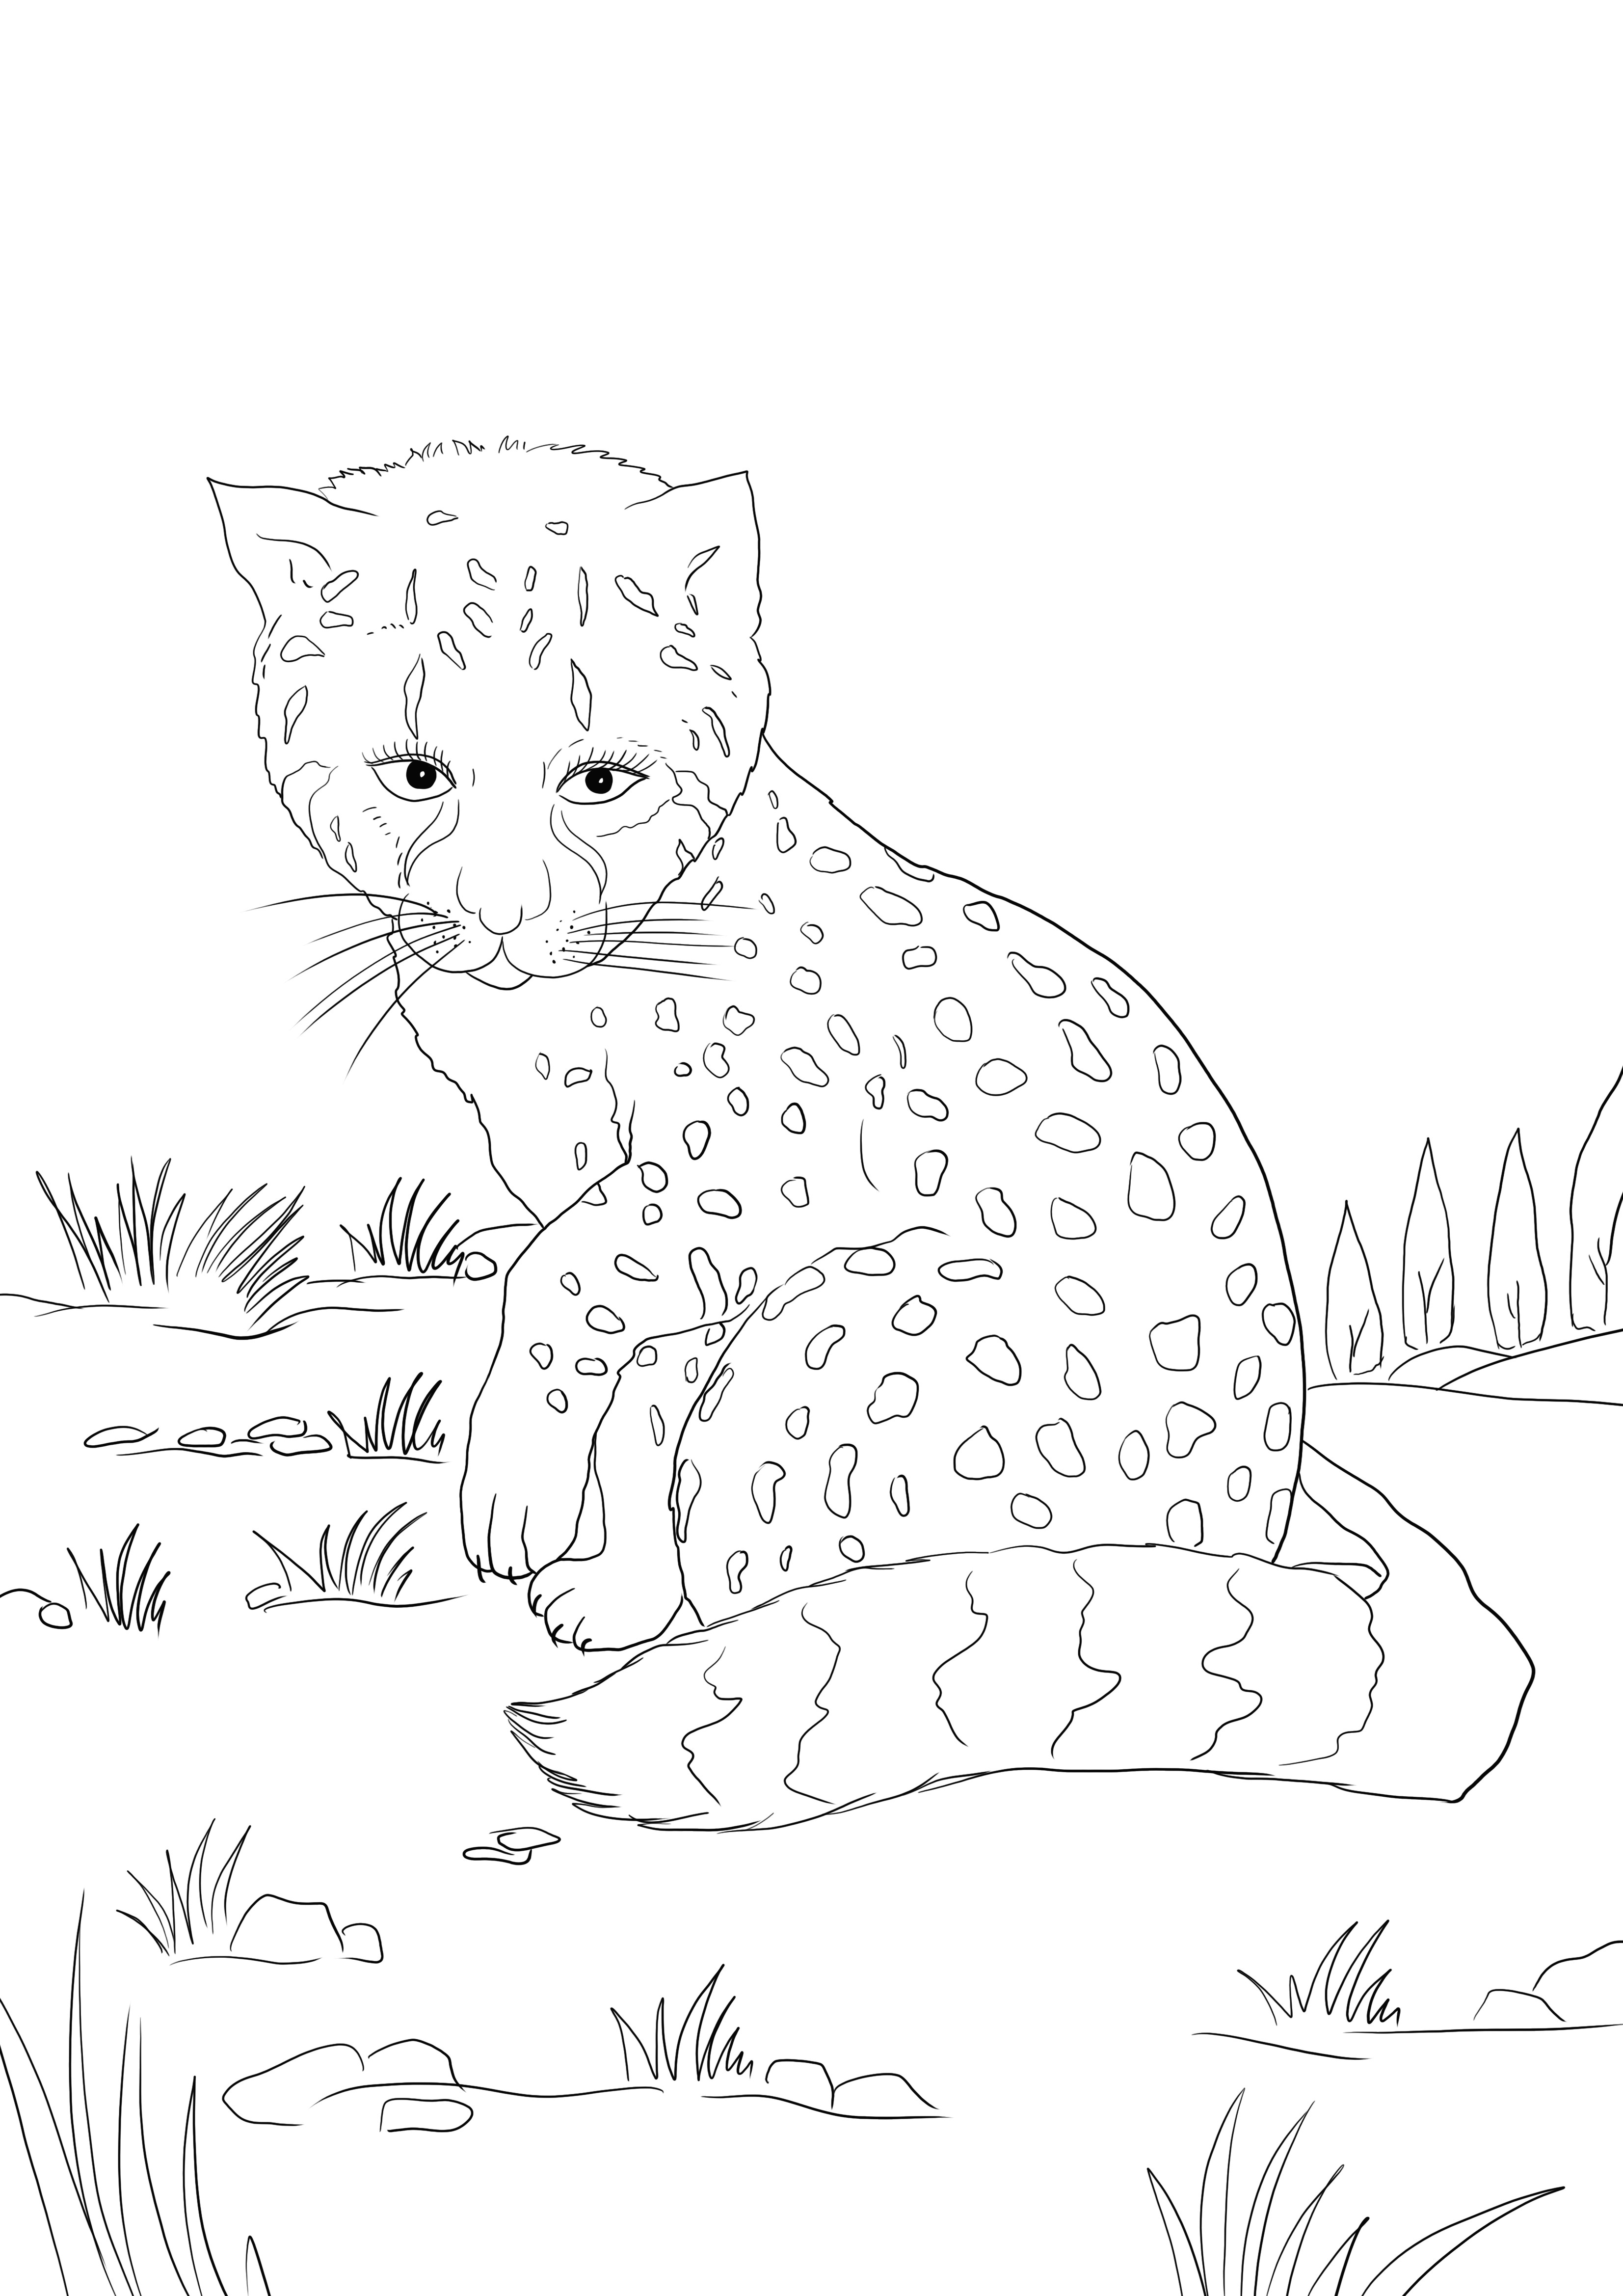  Un cucciolo di ghepardo triste che cerca la sua mamma libera di stampare e colorare l'immagine